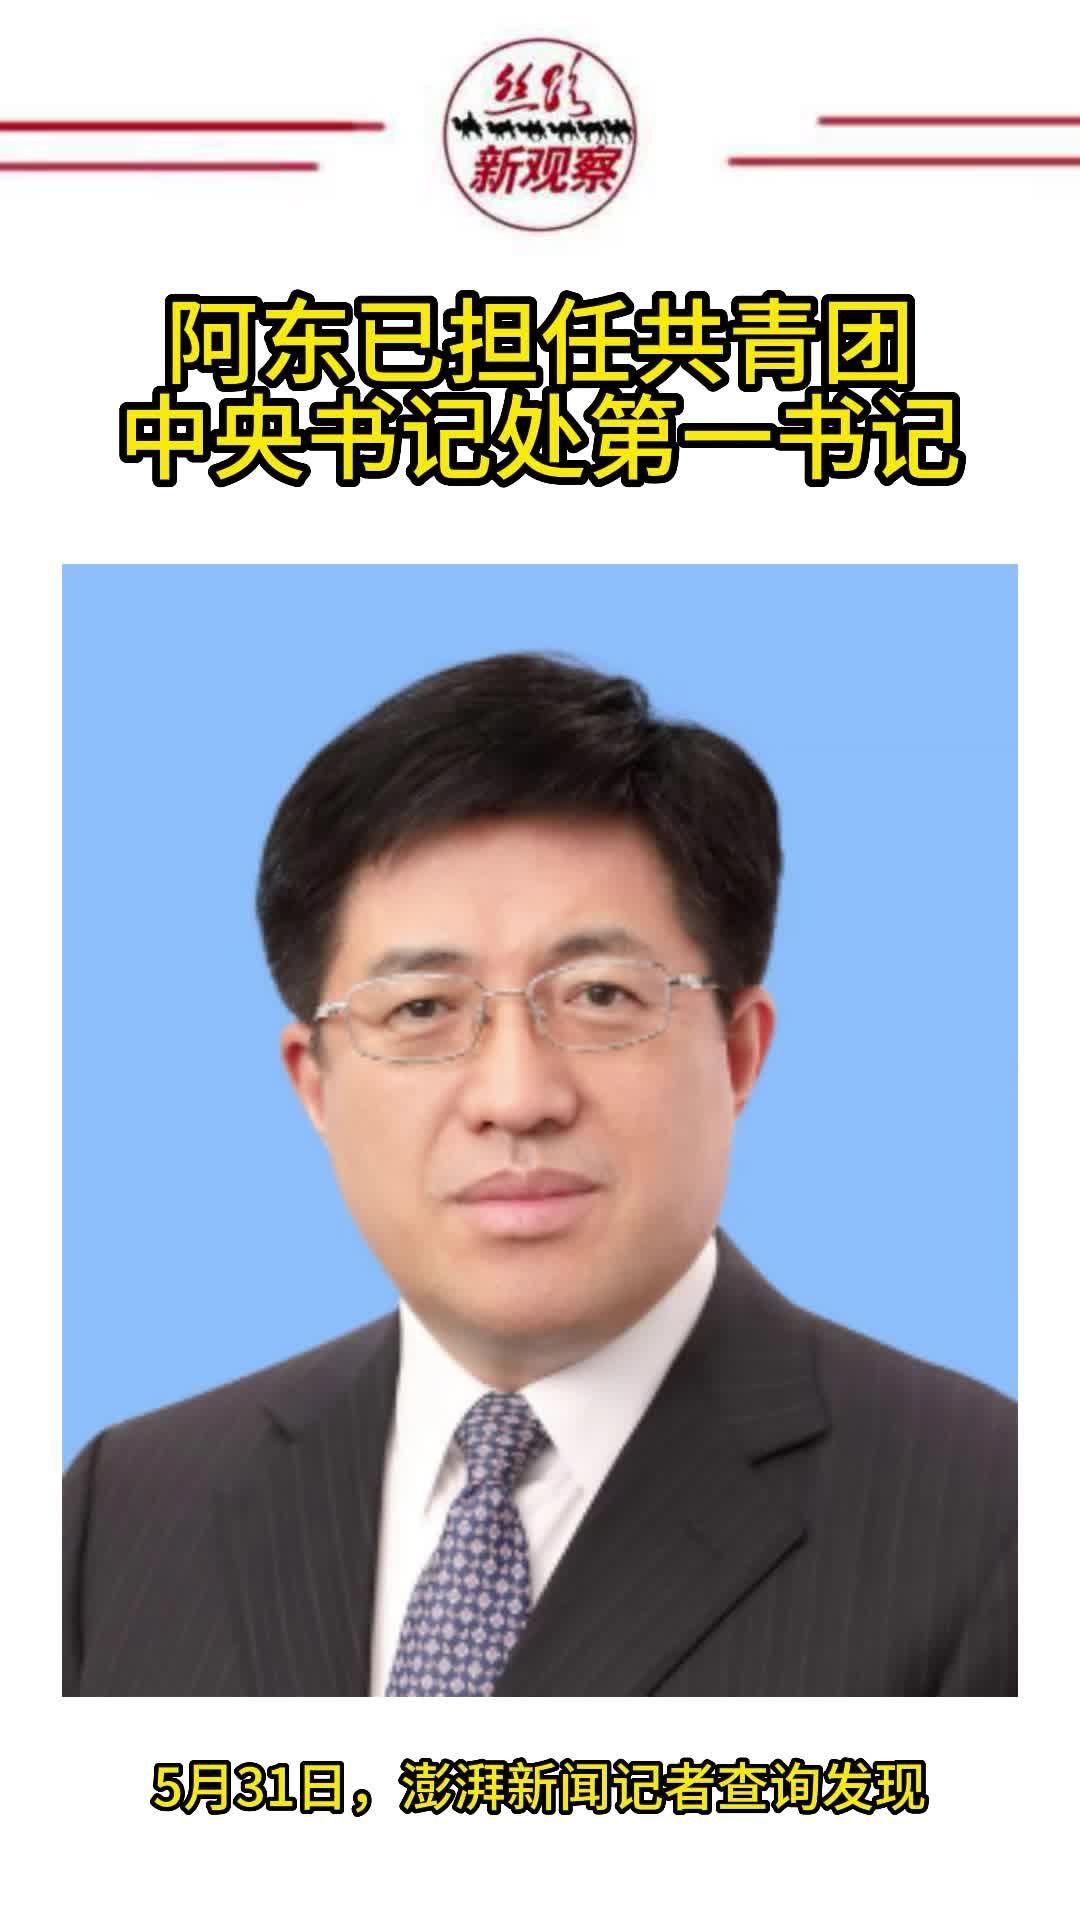 中央任命陳道祥少將出任駐港部隊司令員 | Now 新聞